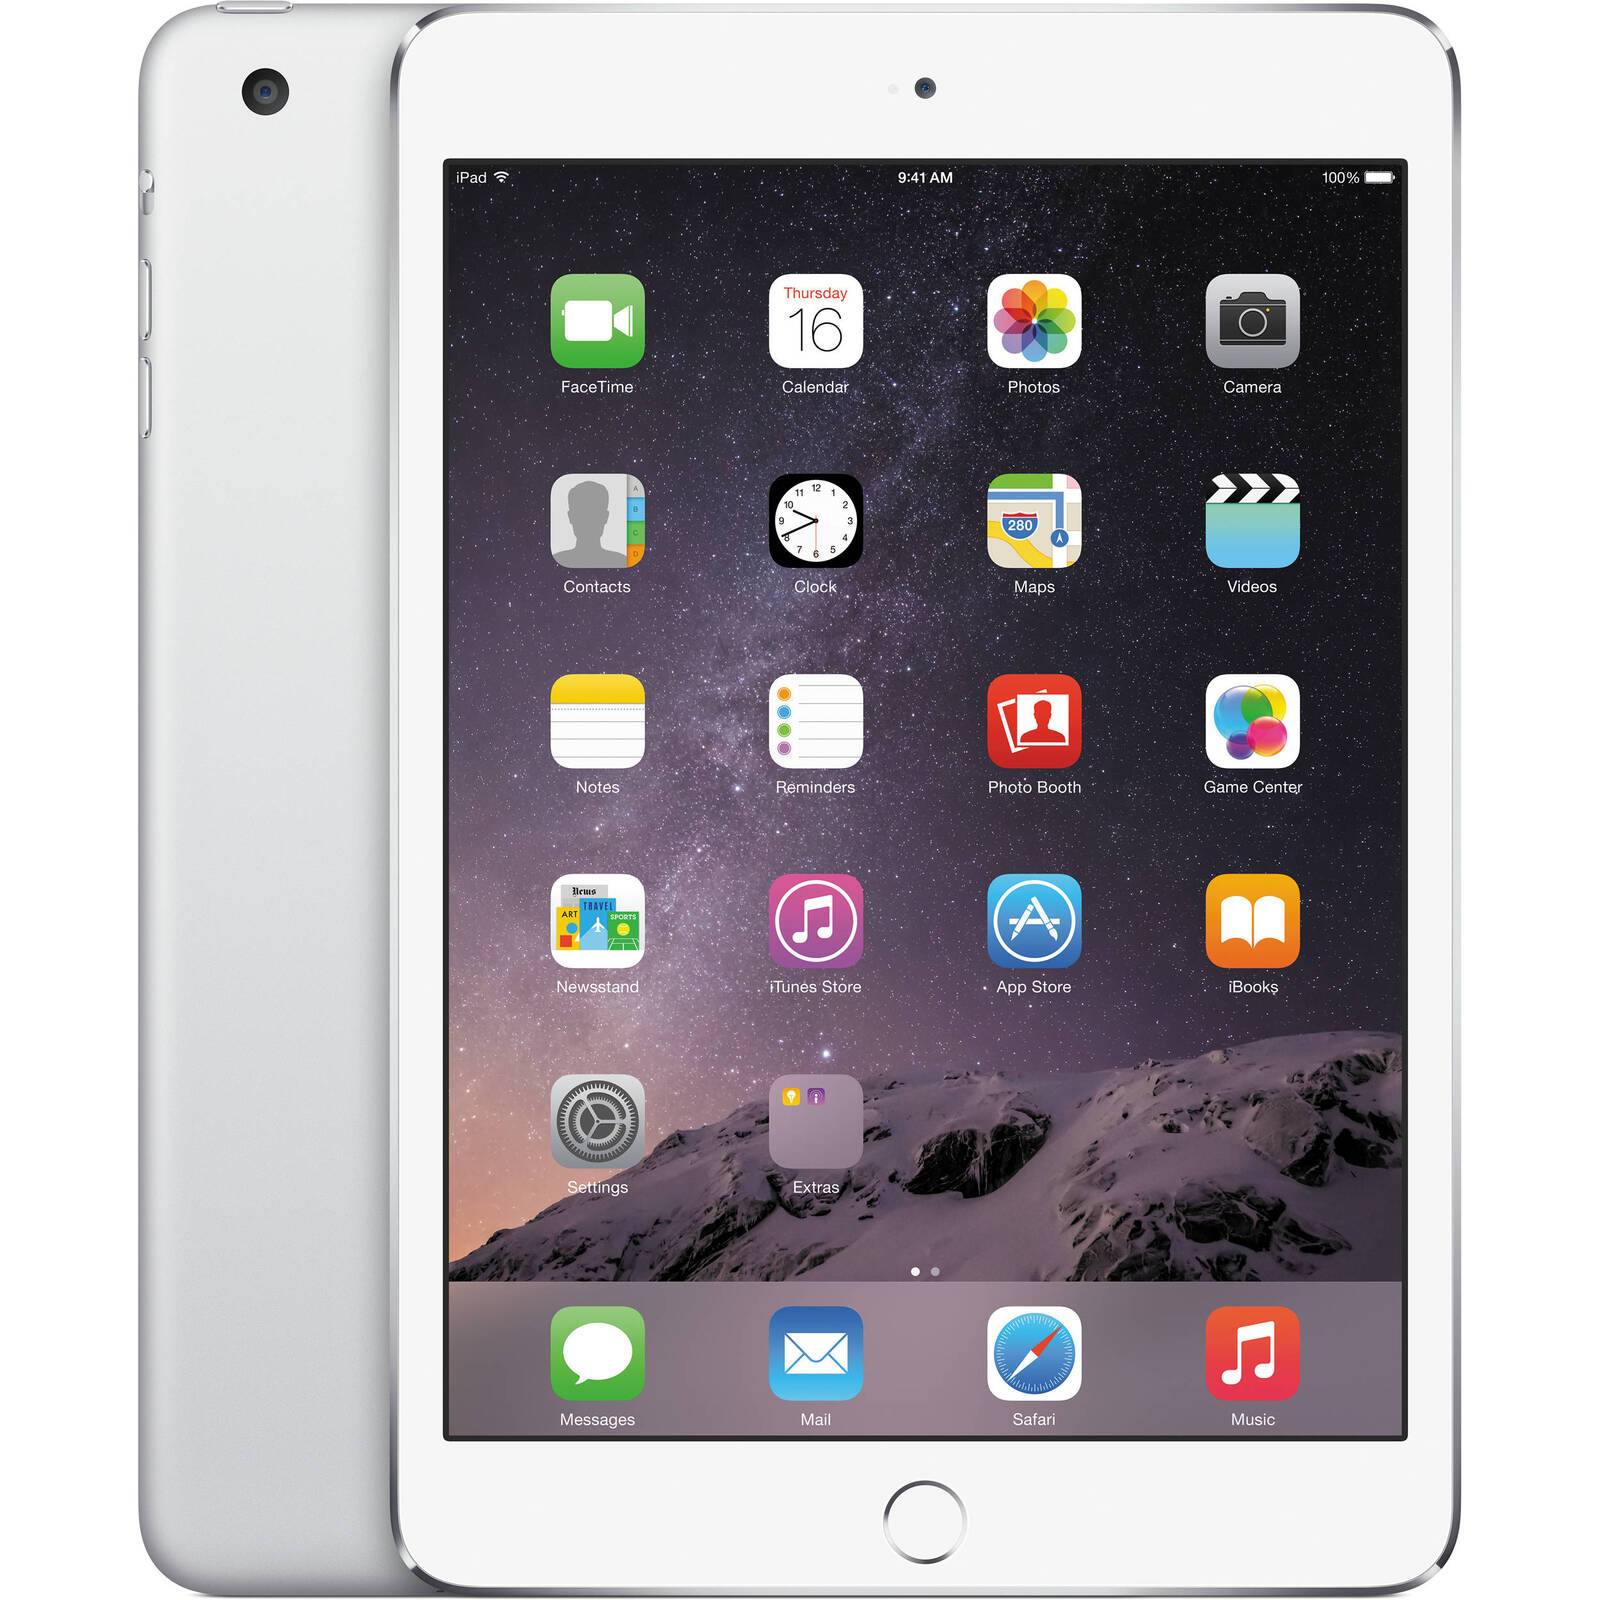 Apple iPad Mini 3 16GB Wifi - White/Silver - (As New Refurbished) - Grade B